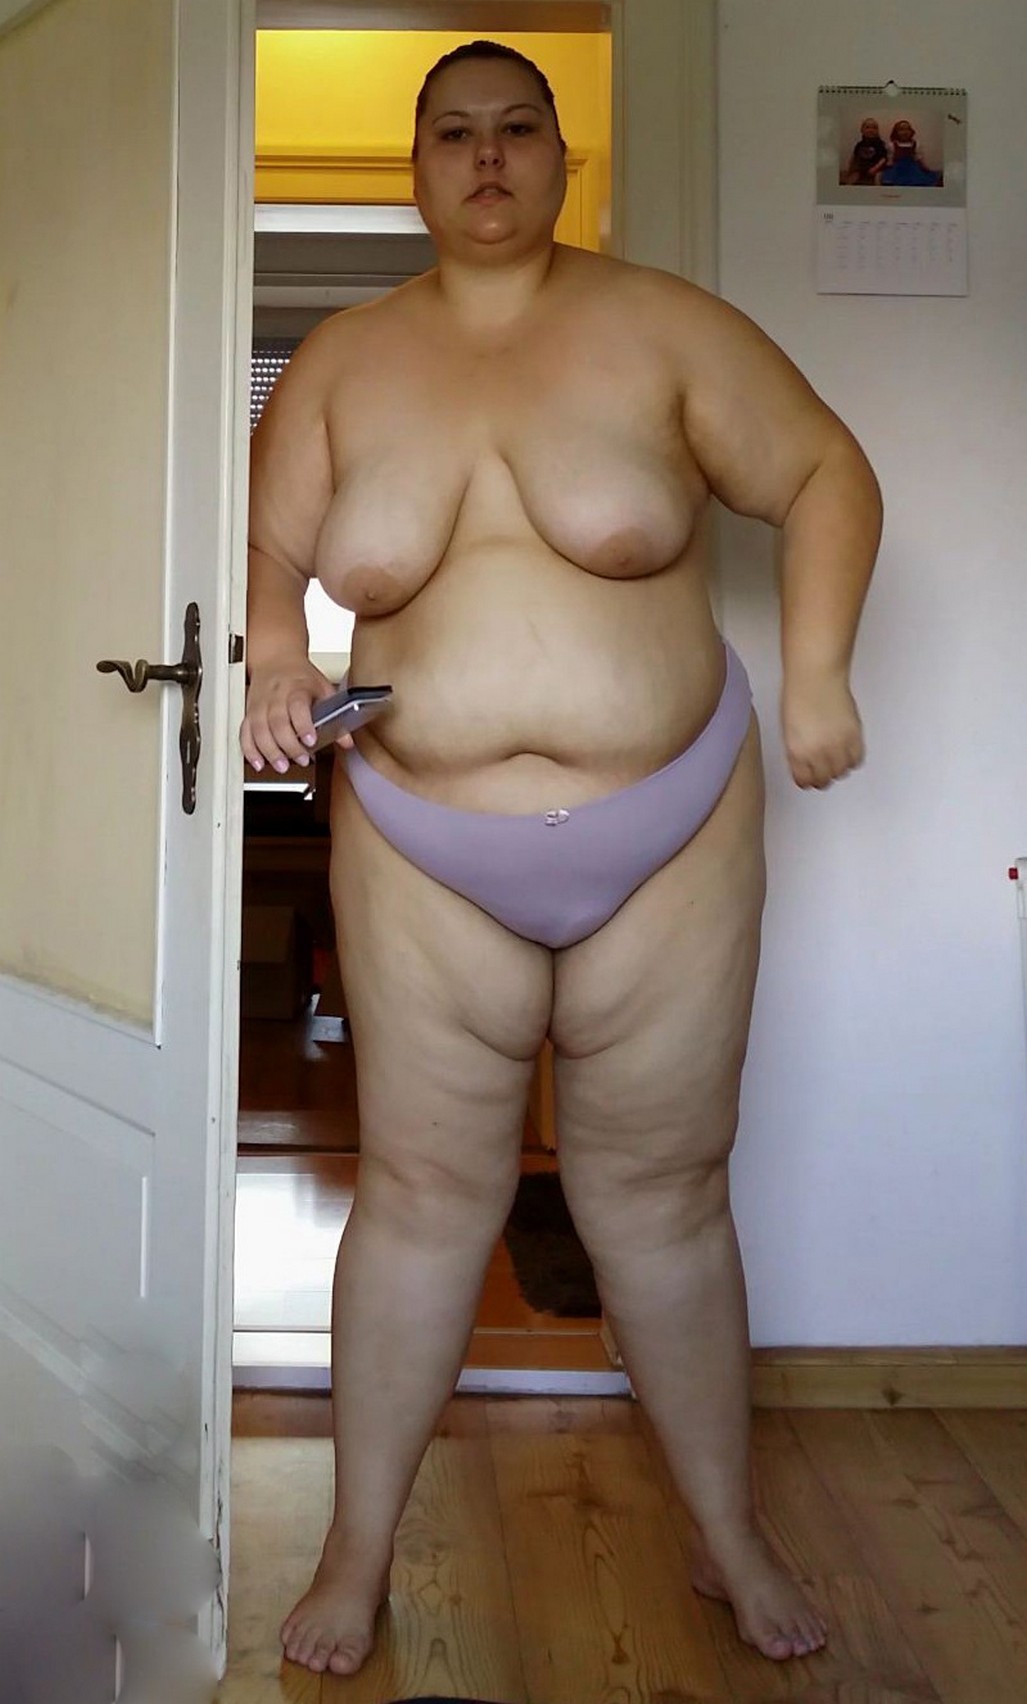 Free porn pics of Dumb Fat Pig Slut Wife Exposed 5 of 11 pics